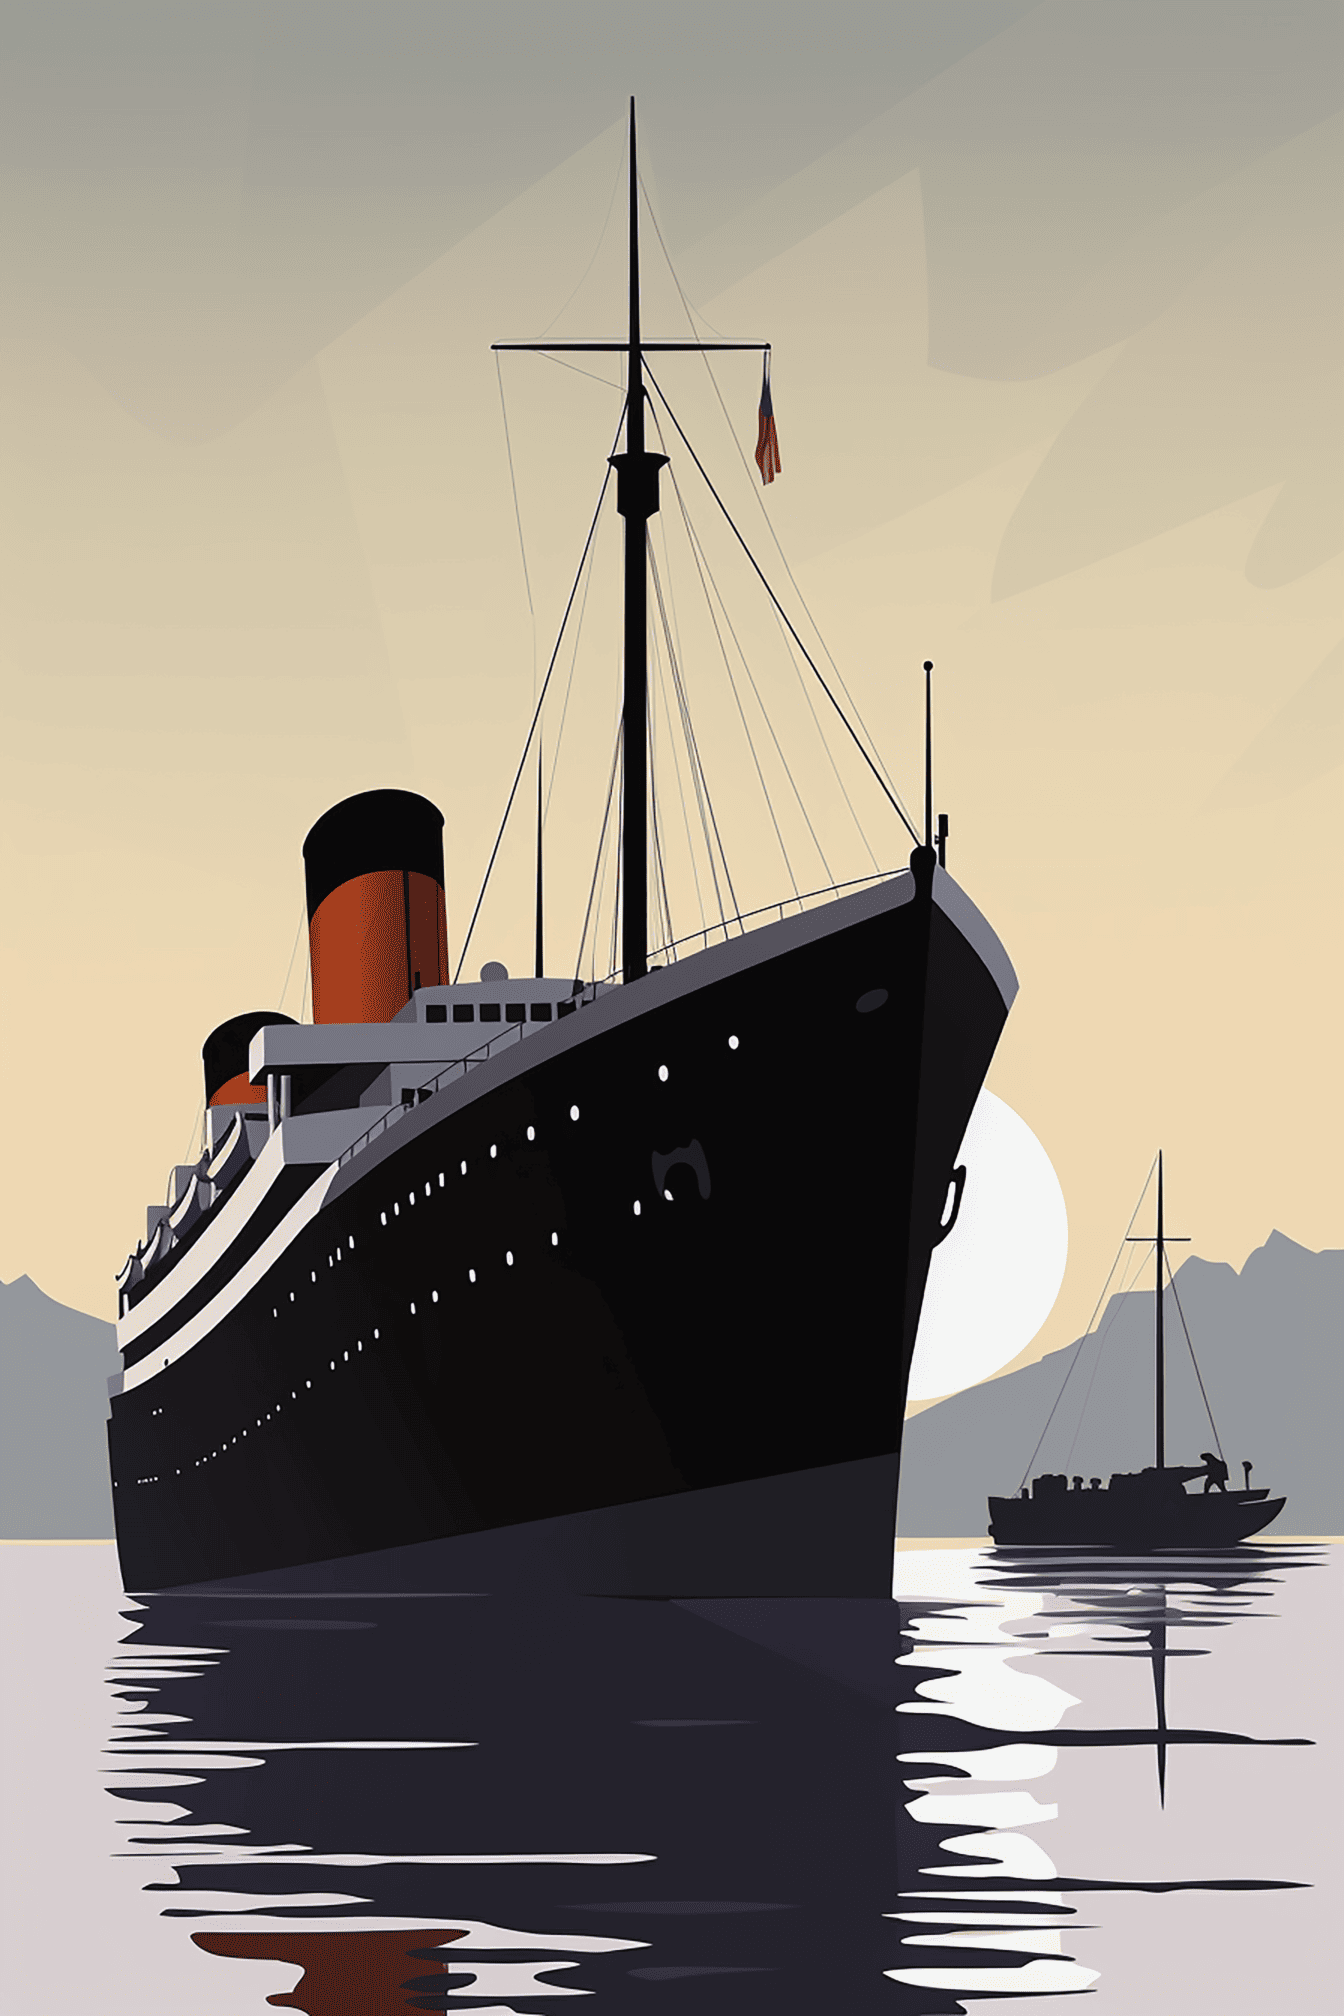 Иллюстрация парохода «Титаник» с силуэтом рыбацкой лодки на заднем плане